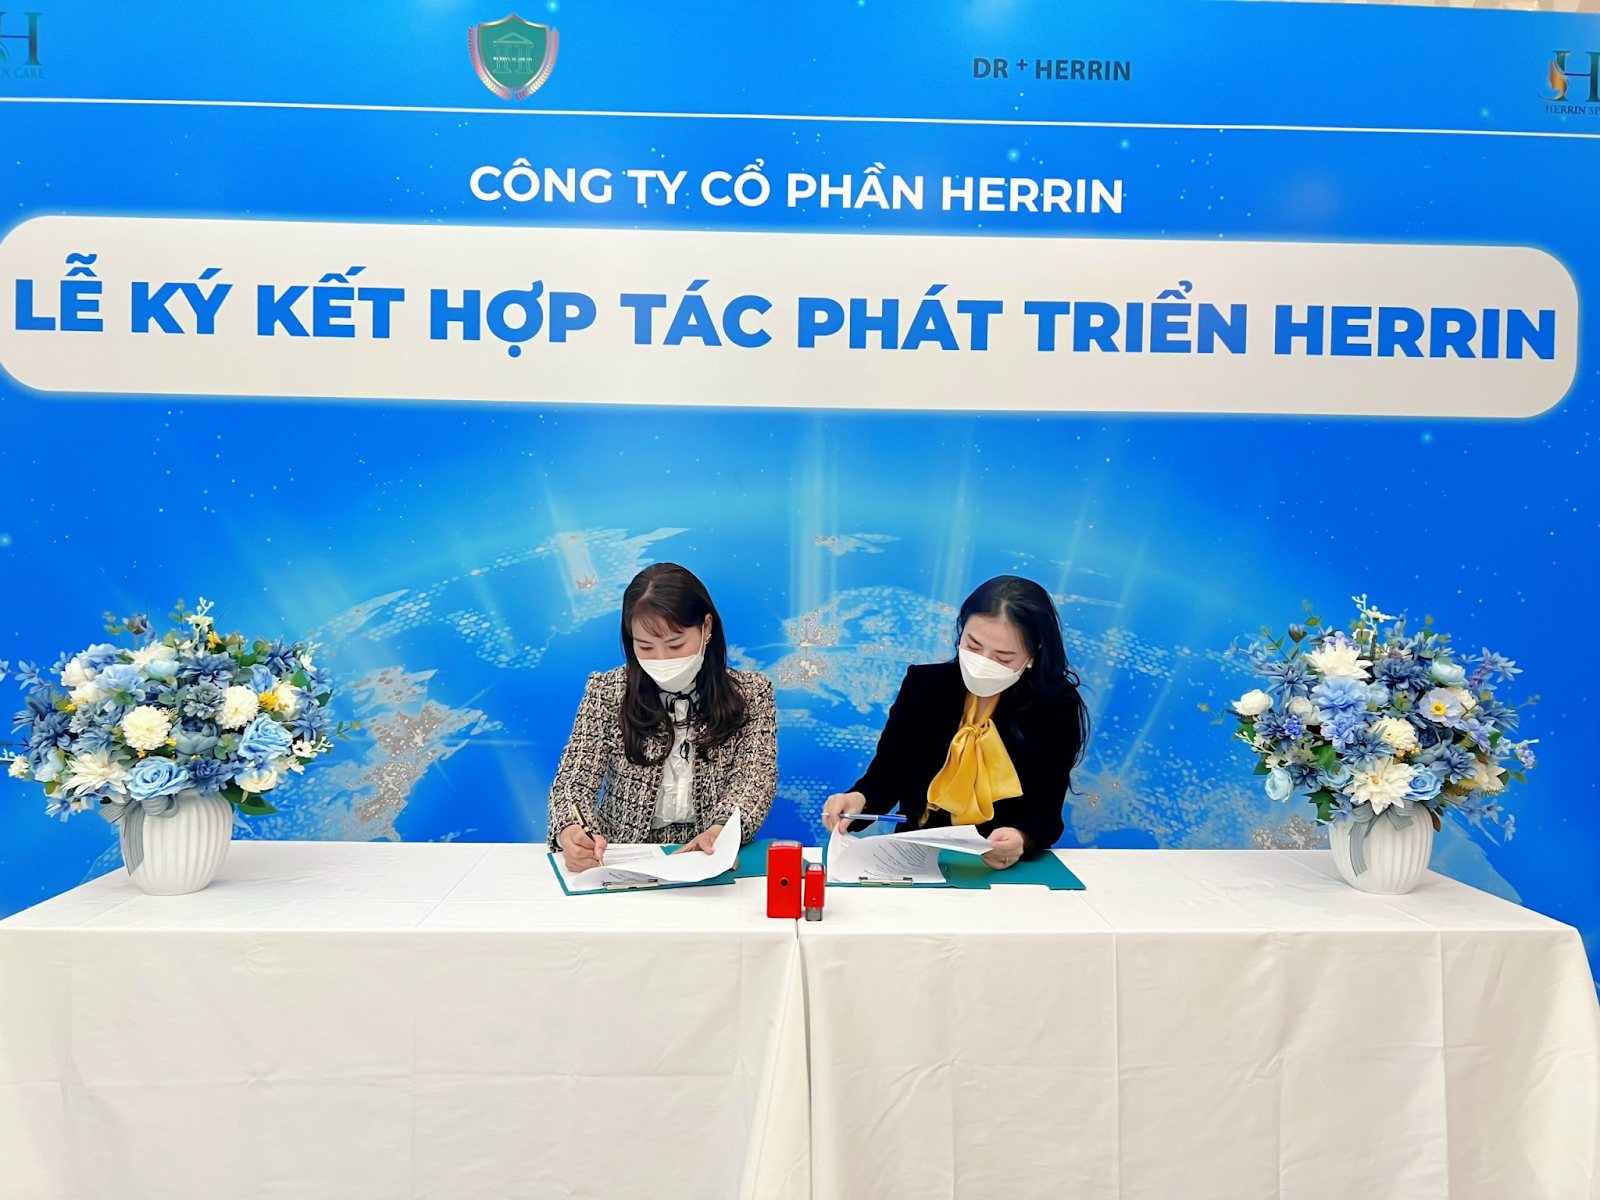 GĐ Nguyễn Thu ký kết hợp tác cùng TGĐ Nguyễn Quyên 